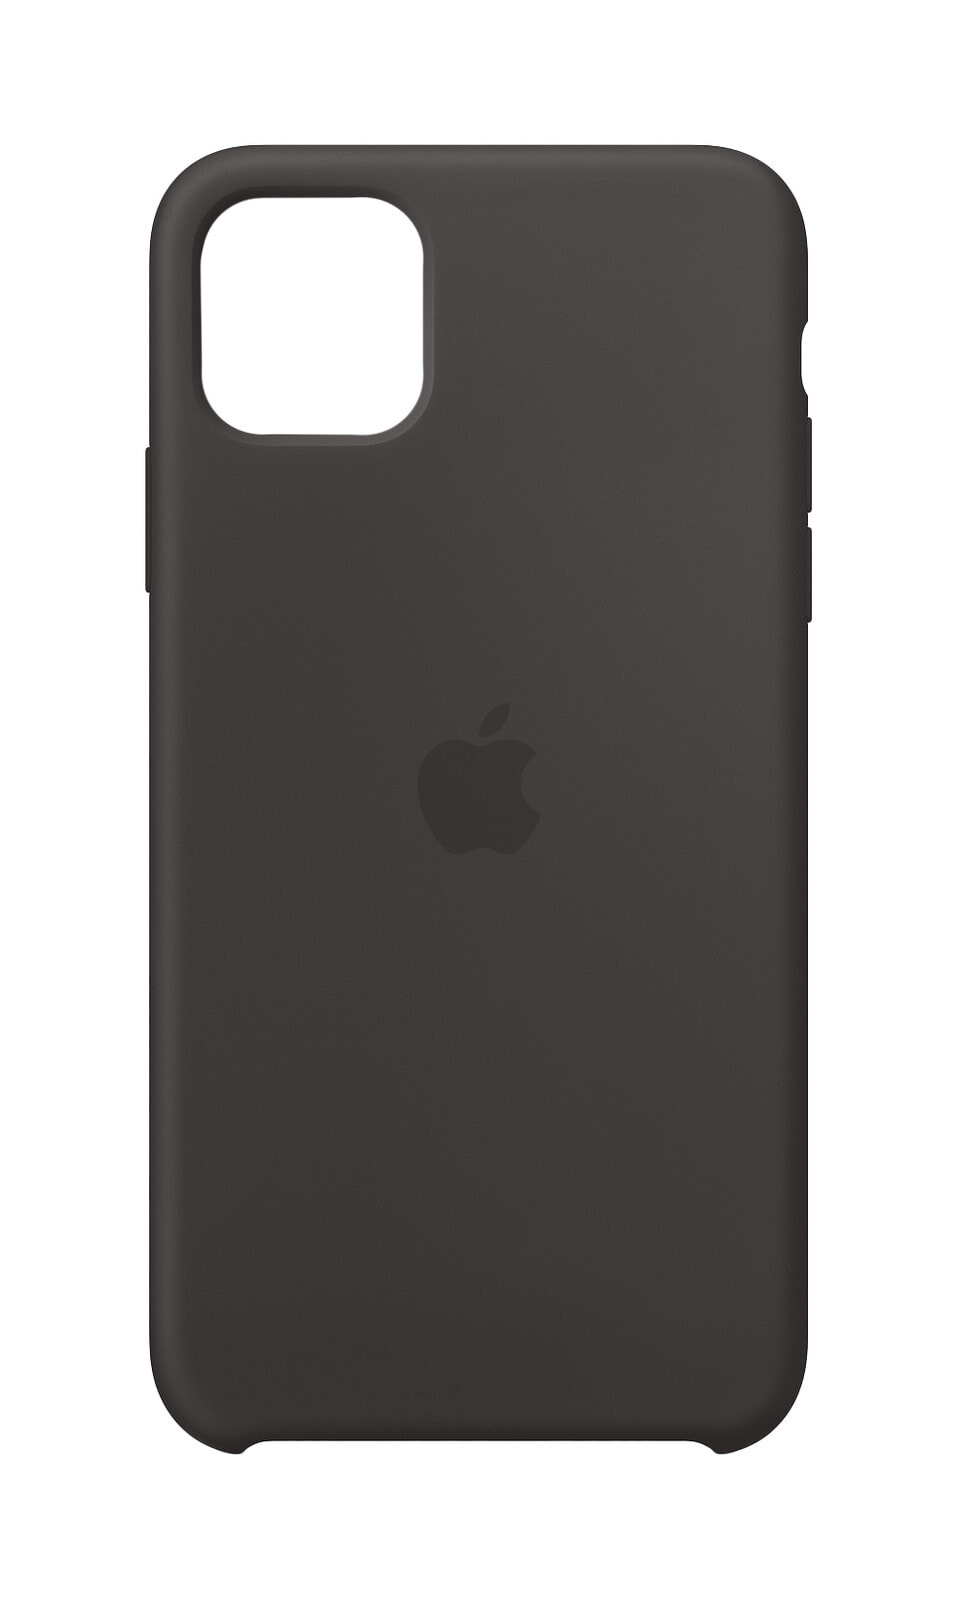 Чехол силиконовый Apple Silicone Case MX002ZM/A для iPhone 11 Pro Max чёрный